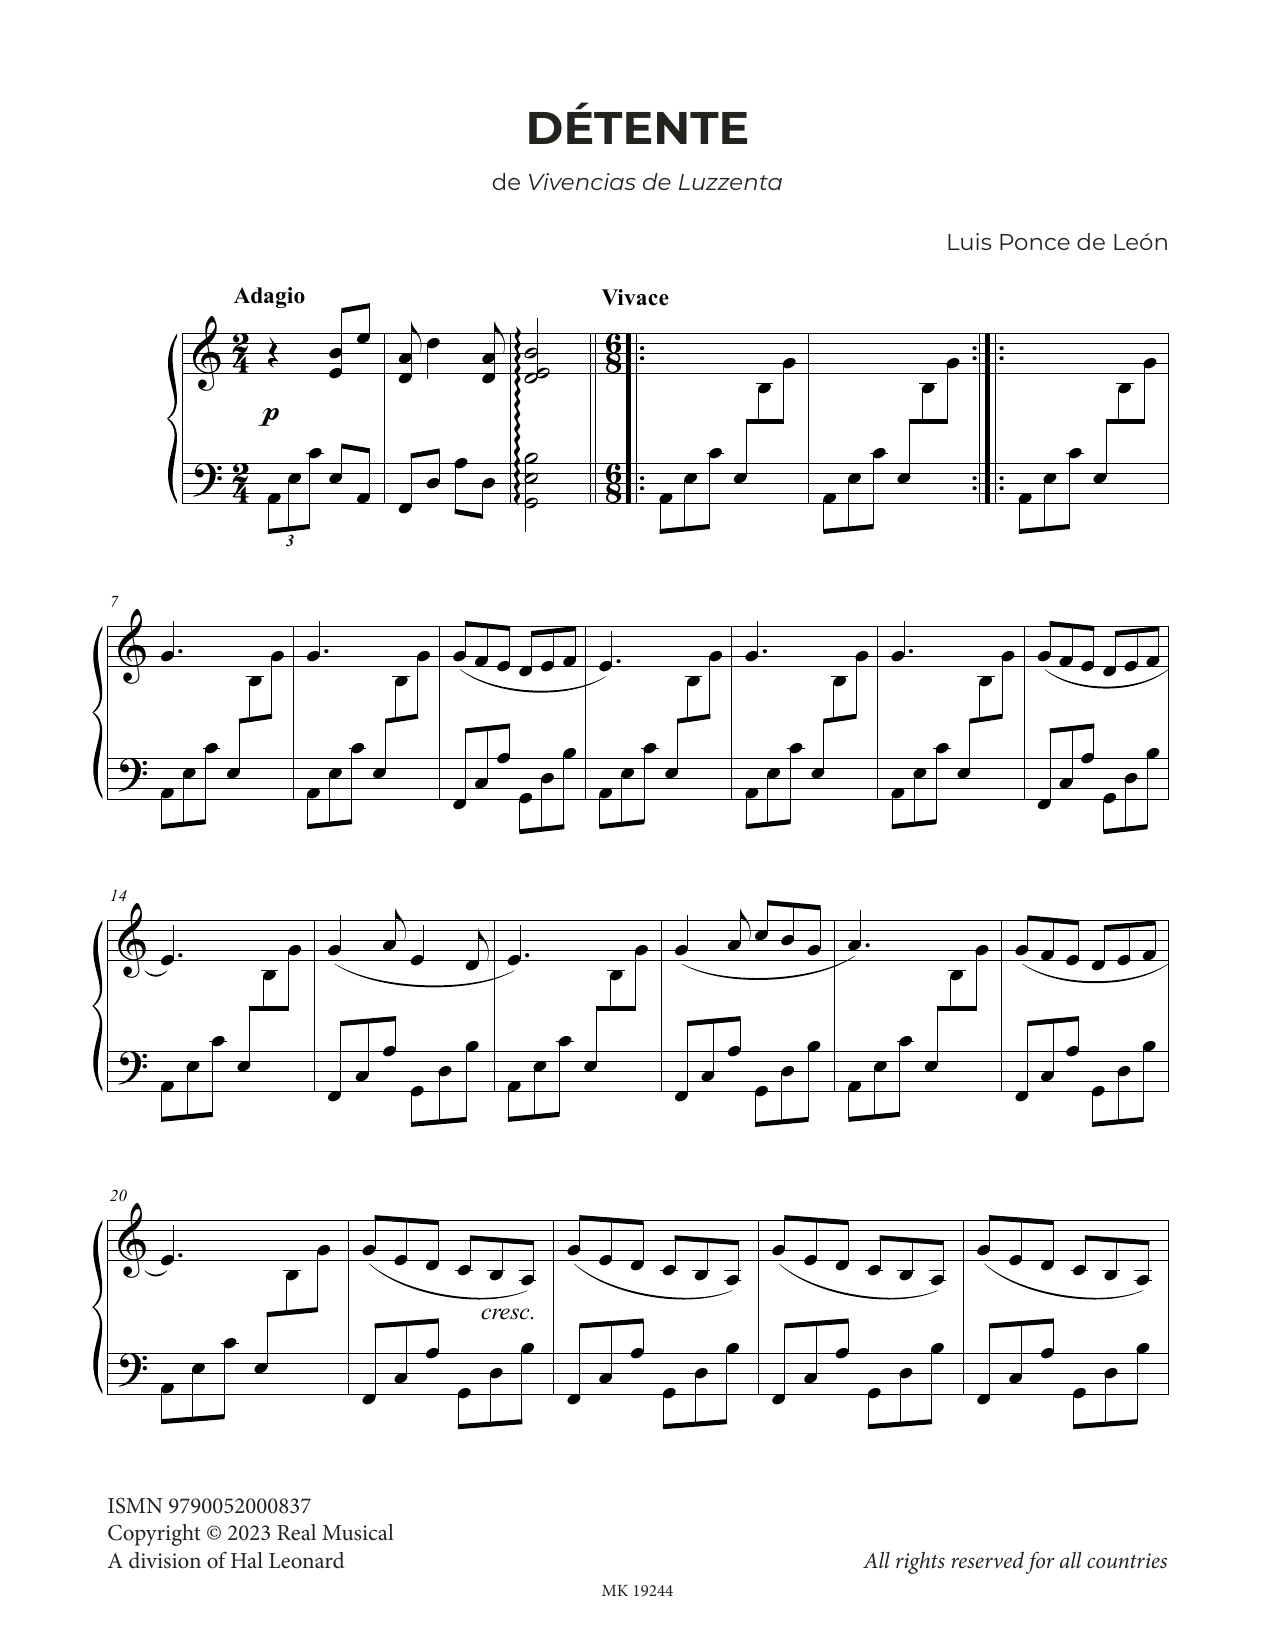 Luis Ponce de León Détente Sheet Music Notes & Chords for Piano Solo - Download or Print PDF